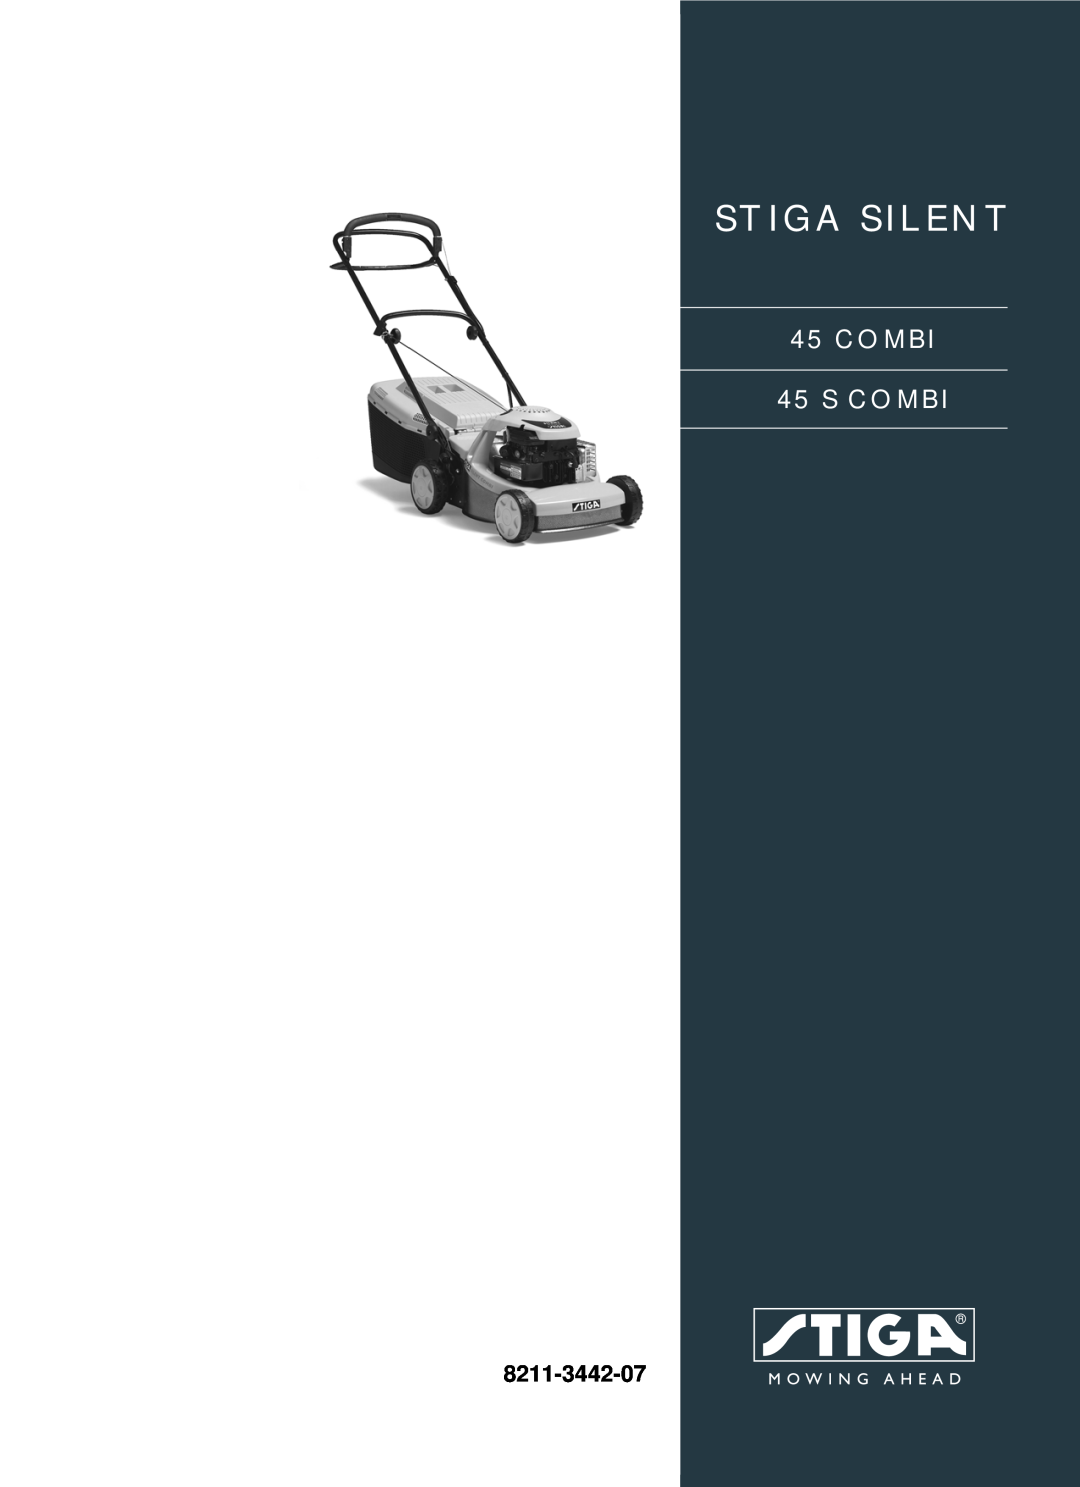 Stiga 45 COMBI manual Stiga Silent, COMBI 45 S COMBI, 8211-3442-07 